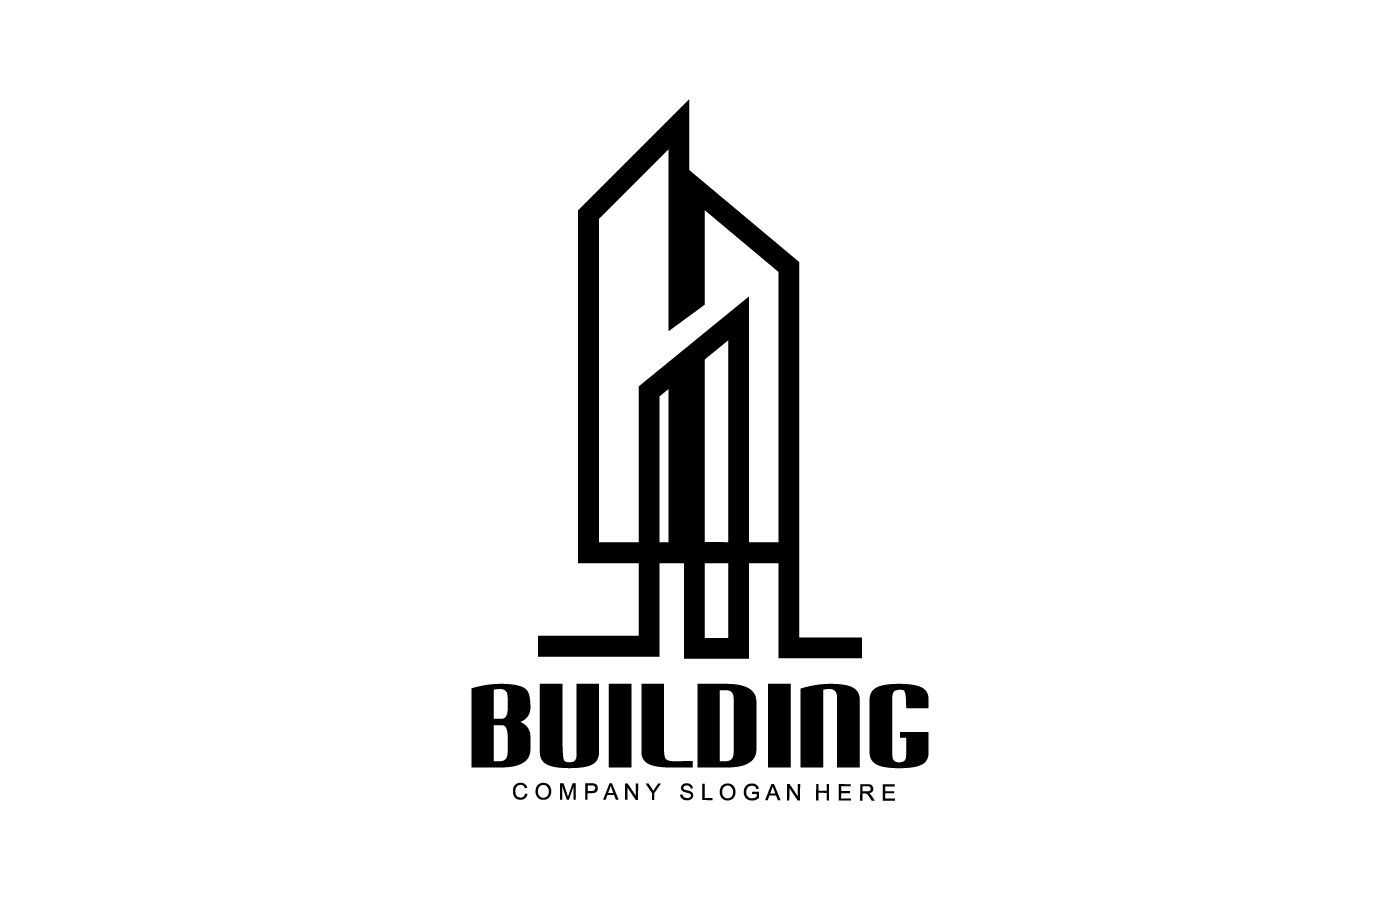 City Building Construction Logo Design V4